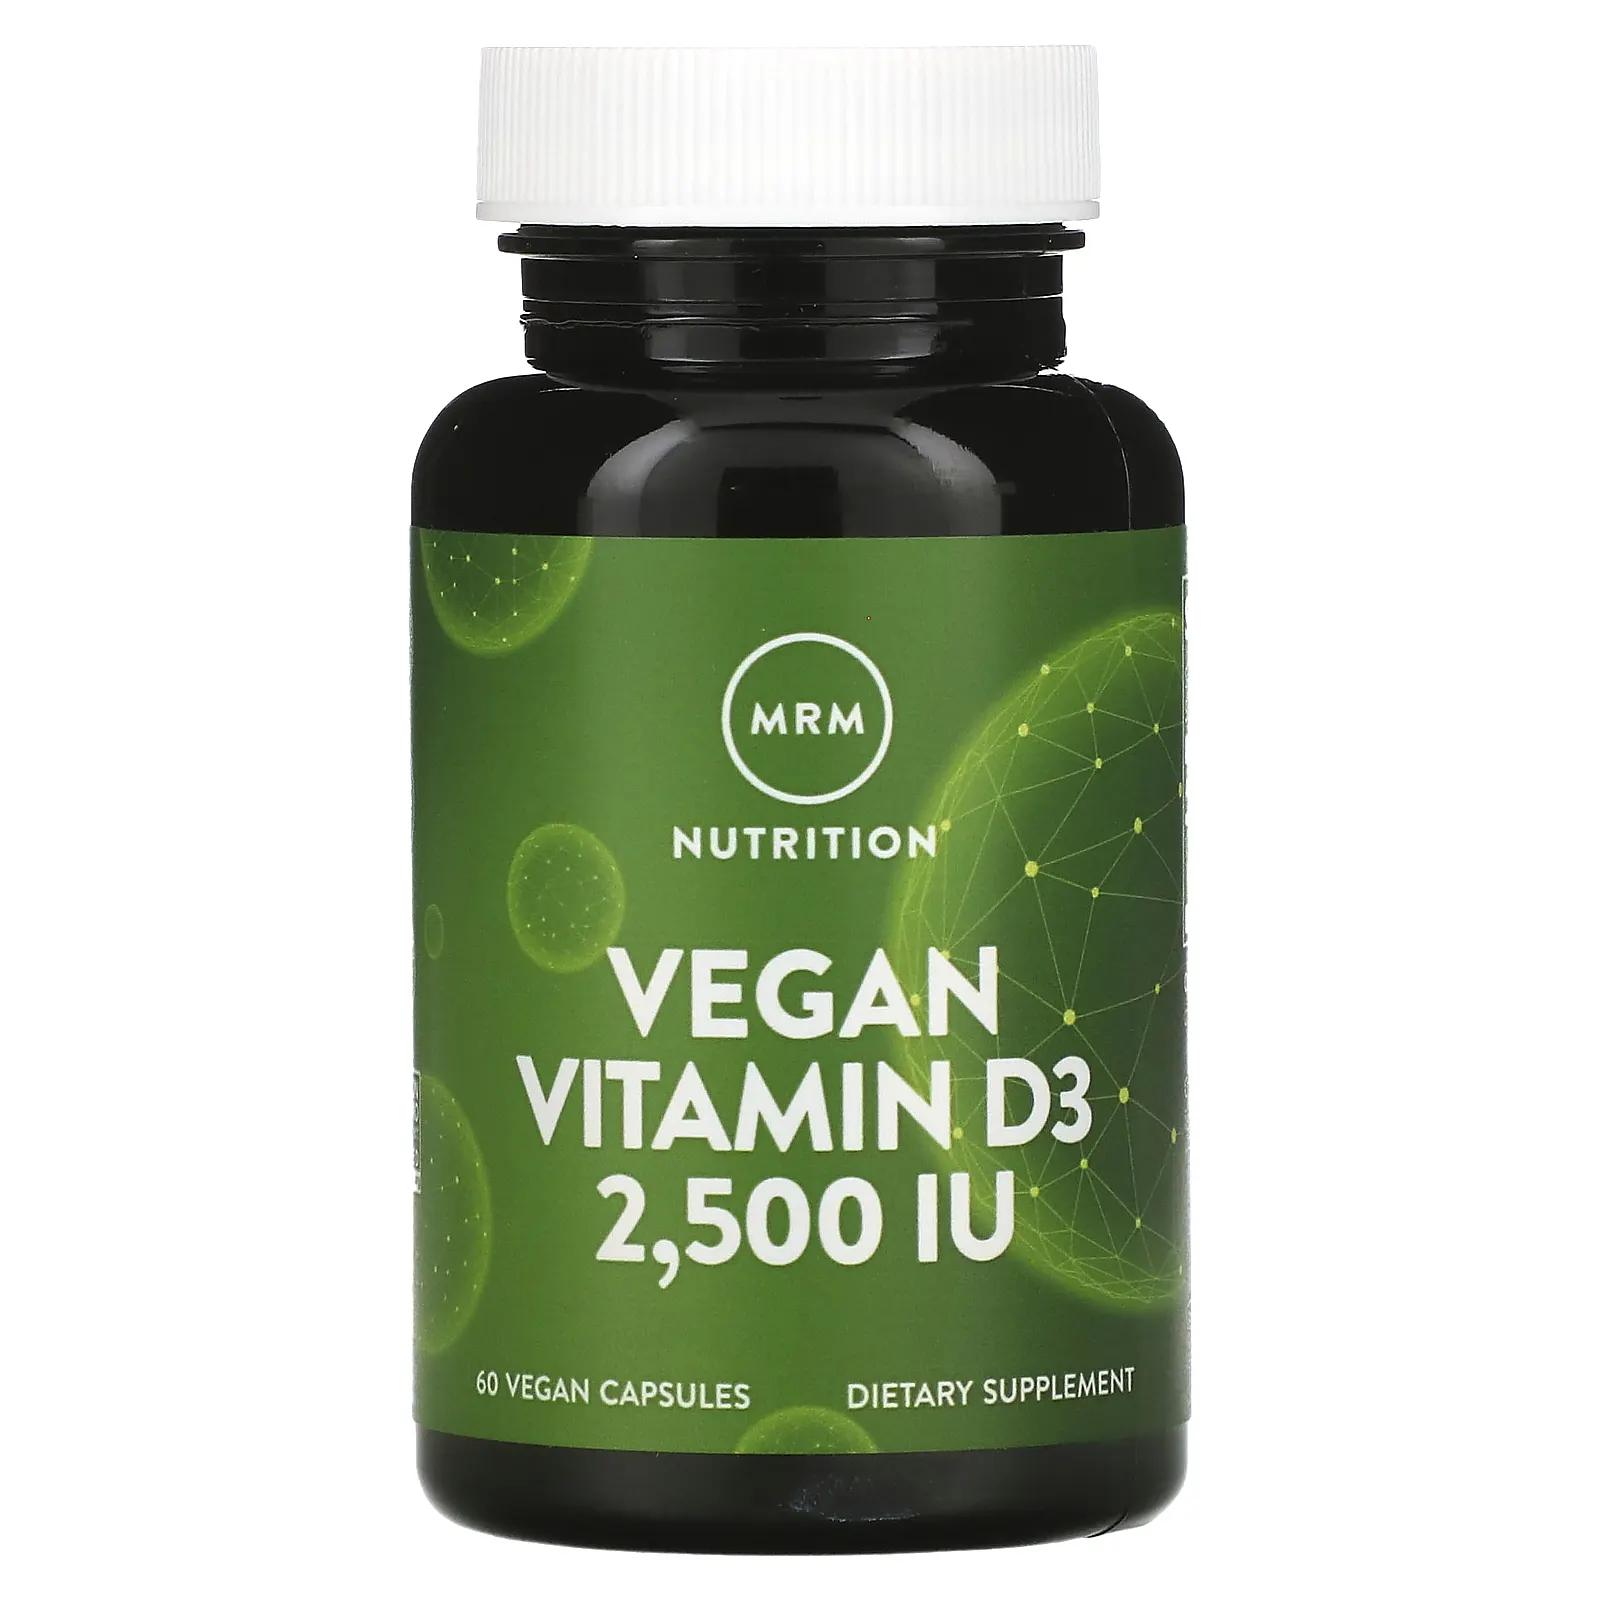 MRM Веганский витамин D3 2500 МЕ 60 веганских капул витамин d3 mrm nutrition 2500 ме 60 капсул